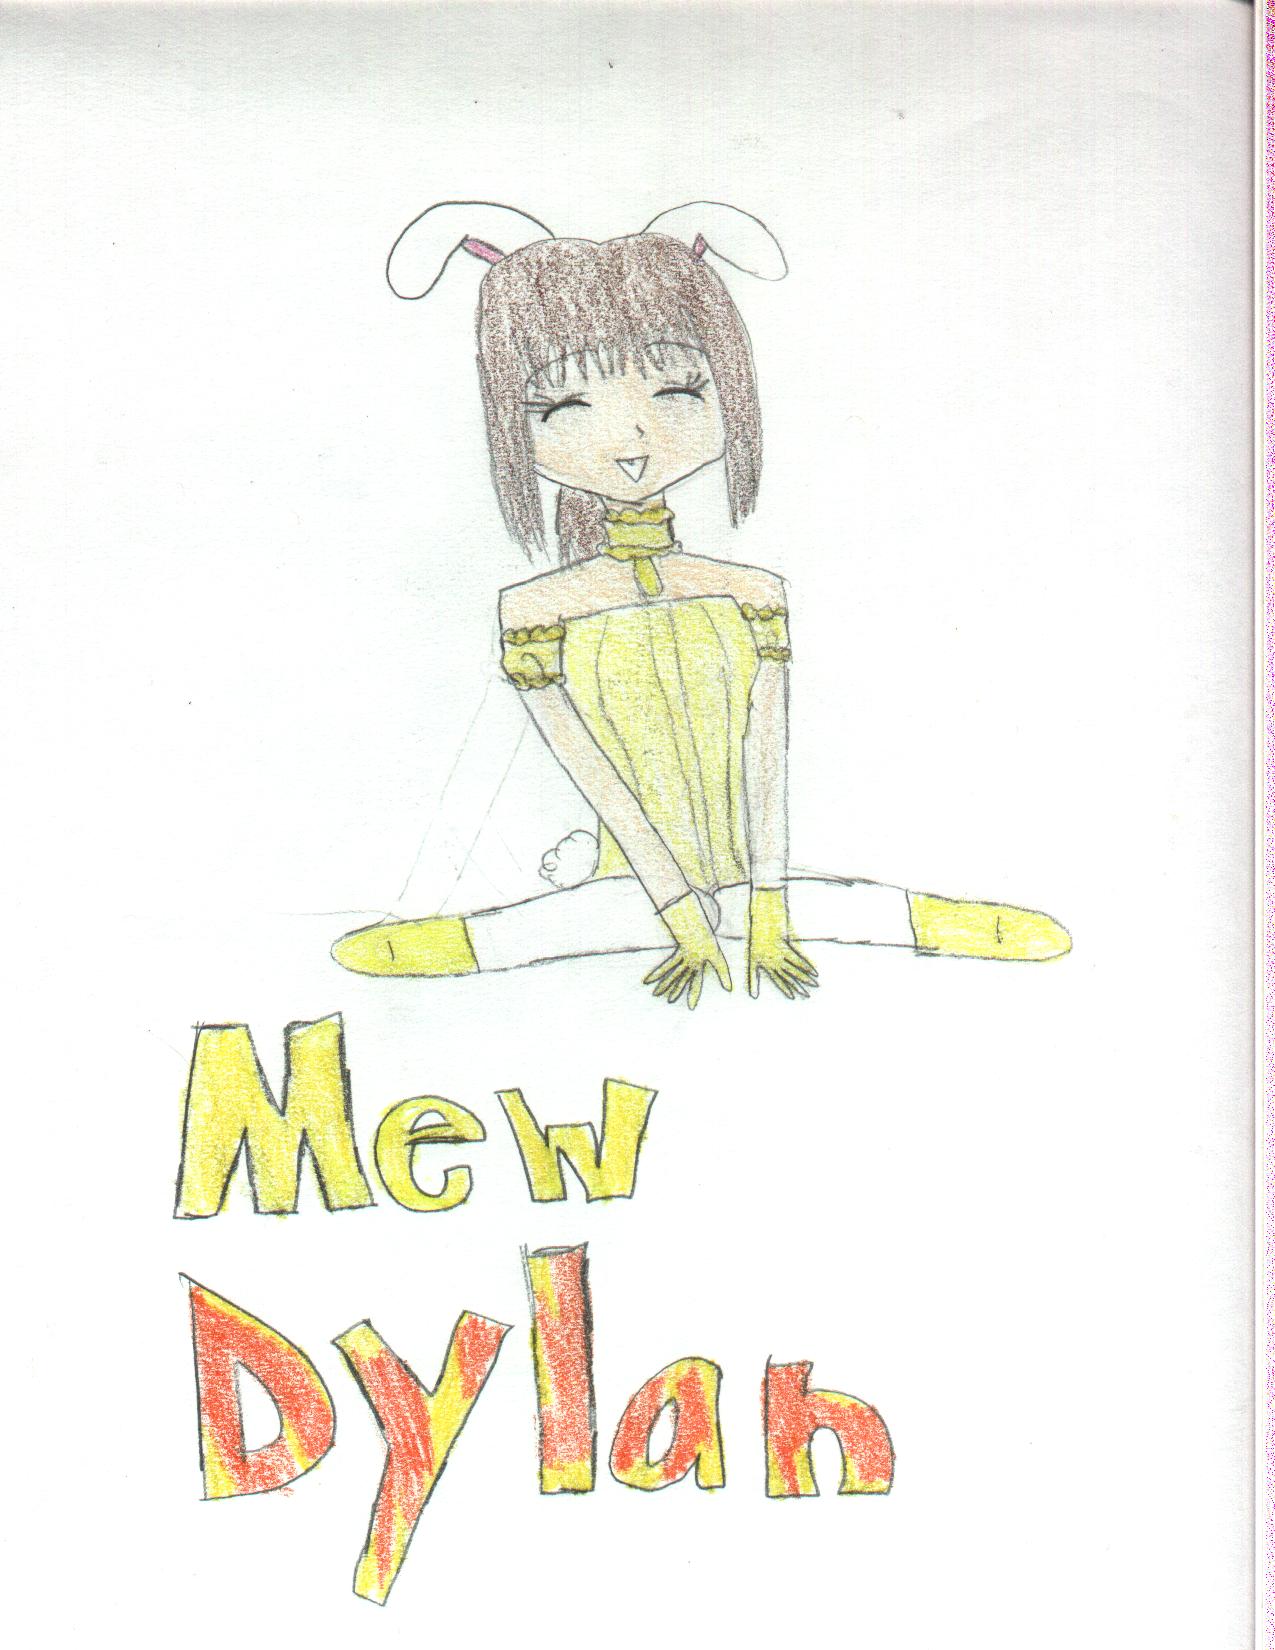 Mew Dylan request 4 mewbunnygirl by Mew_Ichago14